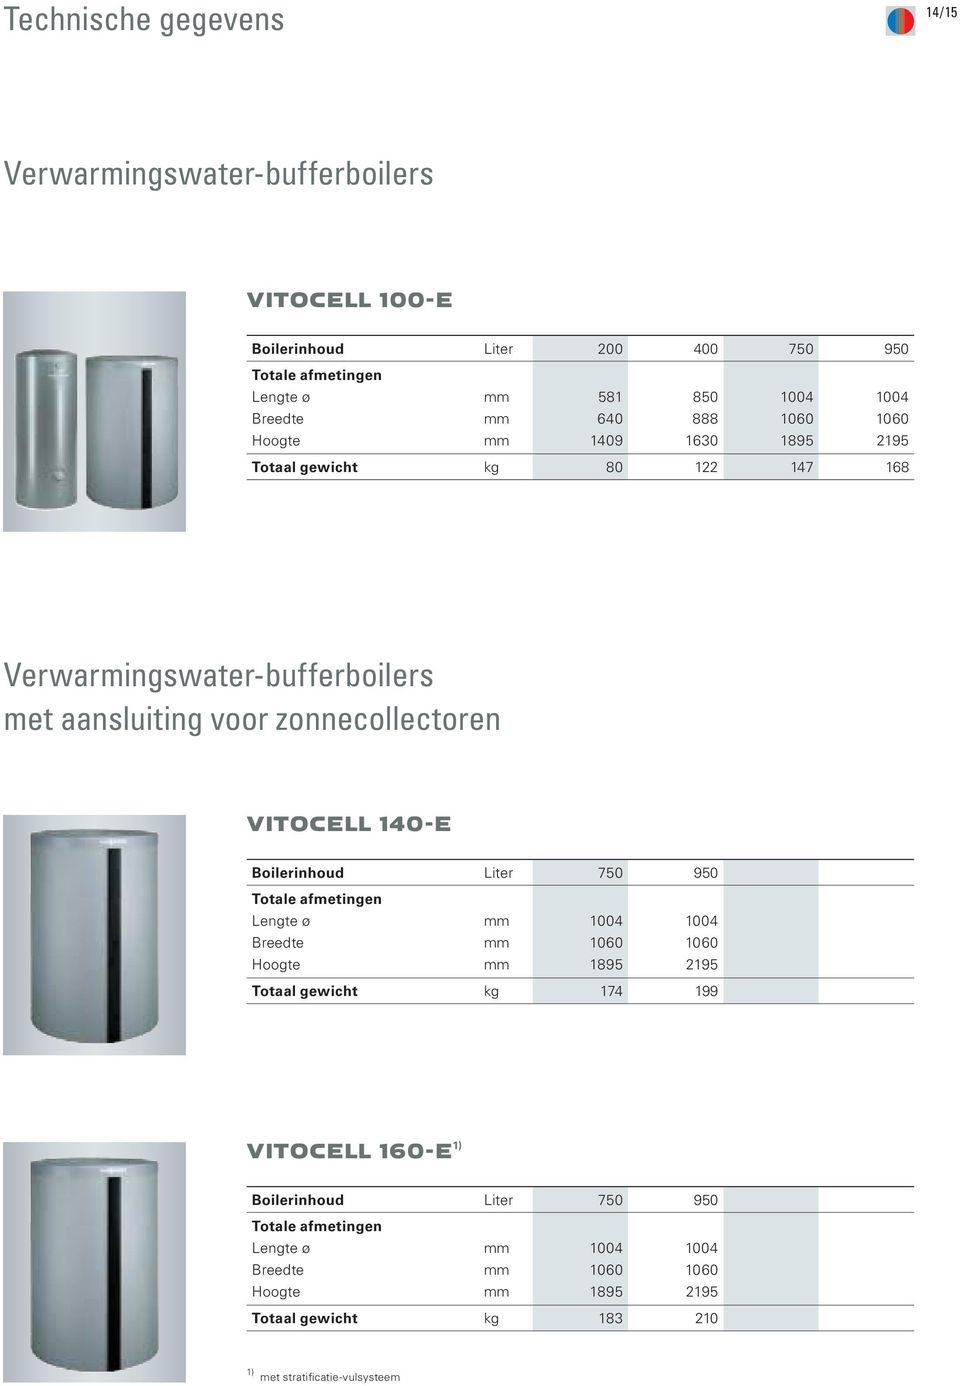 aansluiting voor zonnecollectoren VITOCELL 140-E Boilerinhoud Liter 750 950 1004 1895 1004 2195 Totaal gewicht kg